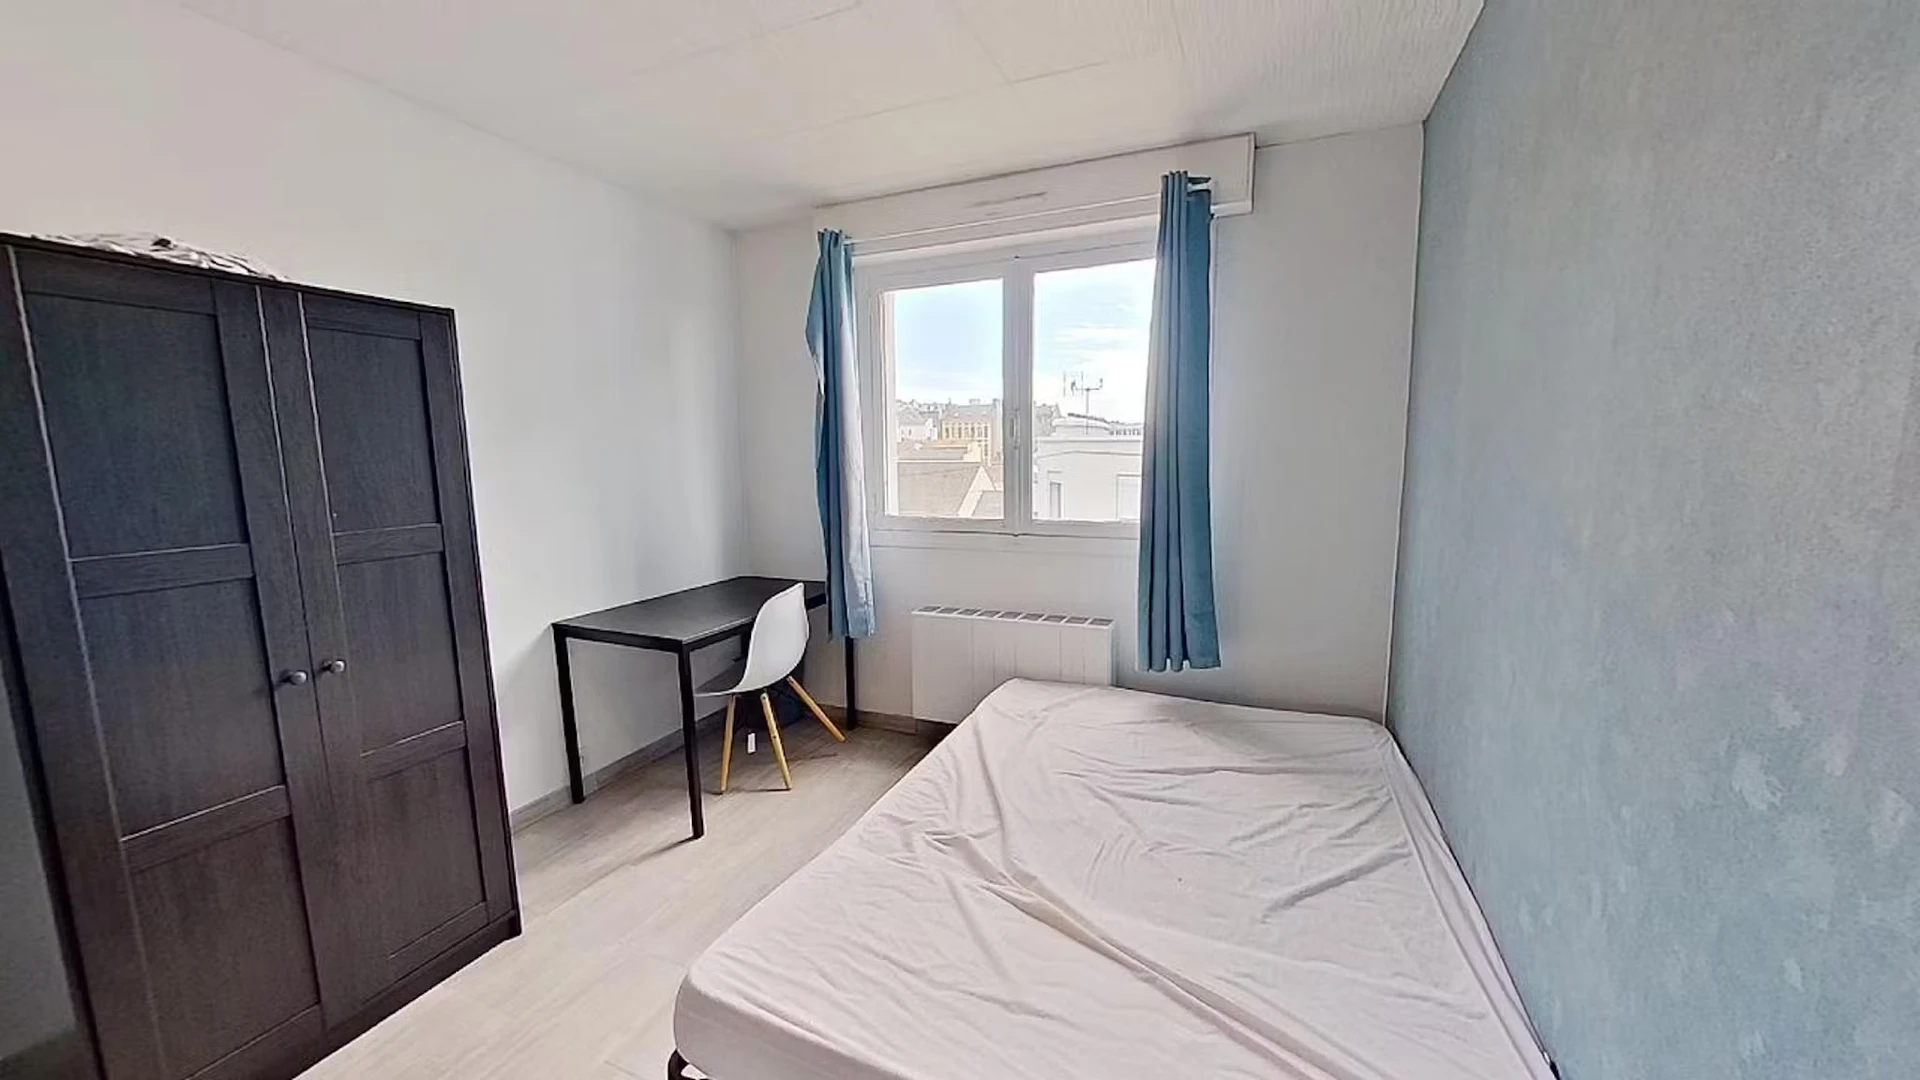 Alquiler de habitación en piso compartido en El Havre